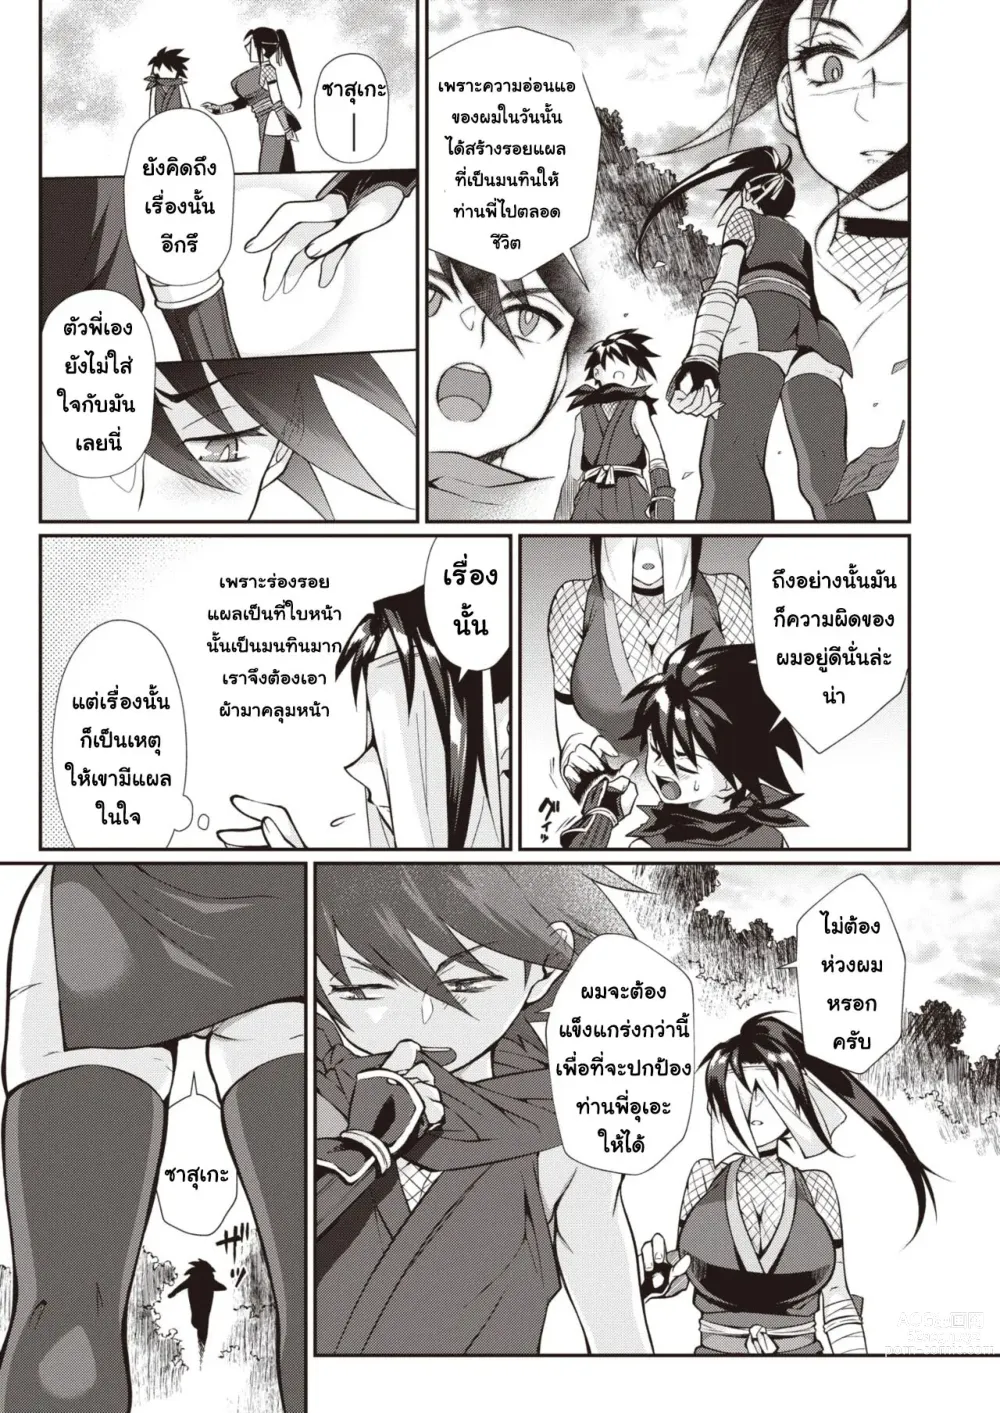 Page 5 of manga ท่านพี่อุเอะ ผู้สอนสั่ง